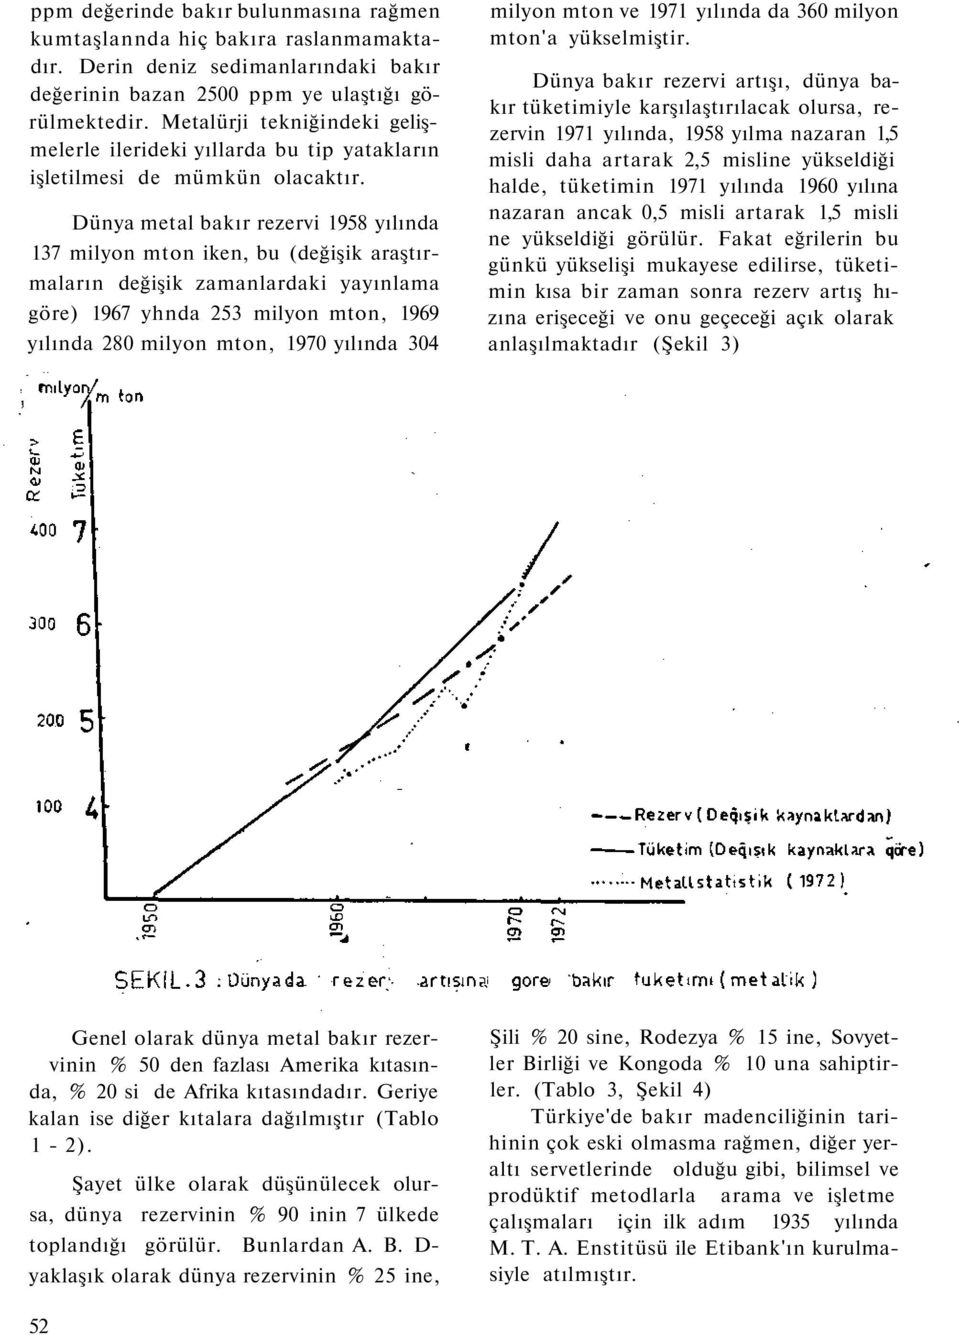 Dünya metal bakır rezervi 1958 yılında 137 milyon mton iken, bu (değişik araştırmaların değişik zamanlardaki yayınlama göre) 1967 yhnda 253 milyon mton, 1969 yılında 280 milyon mton, 1970 yılında 304